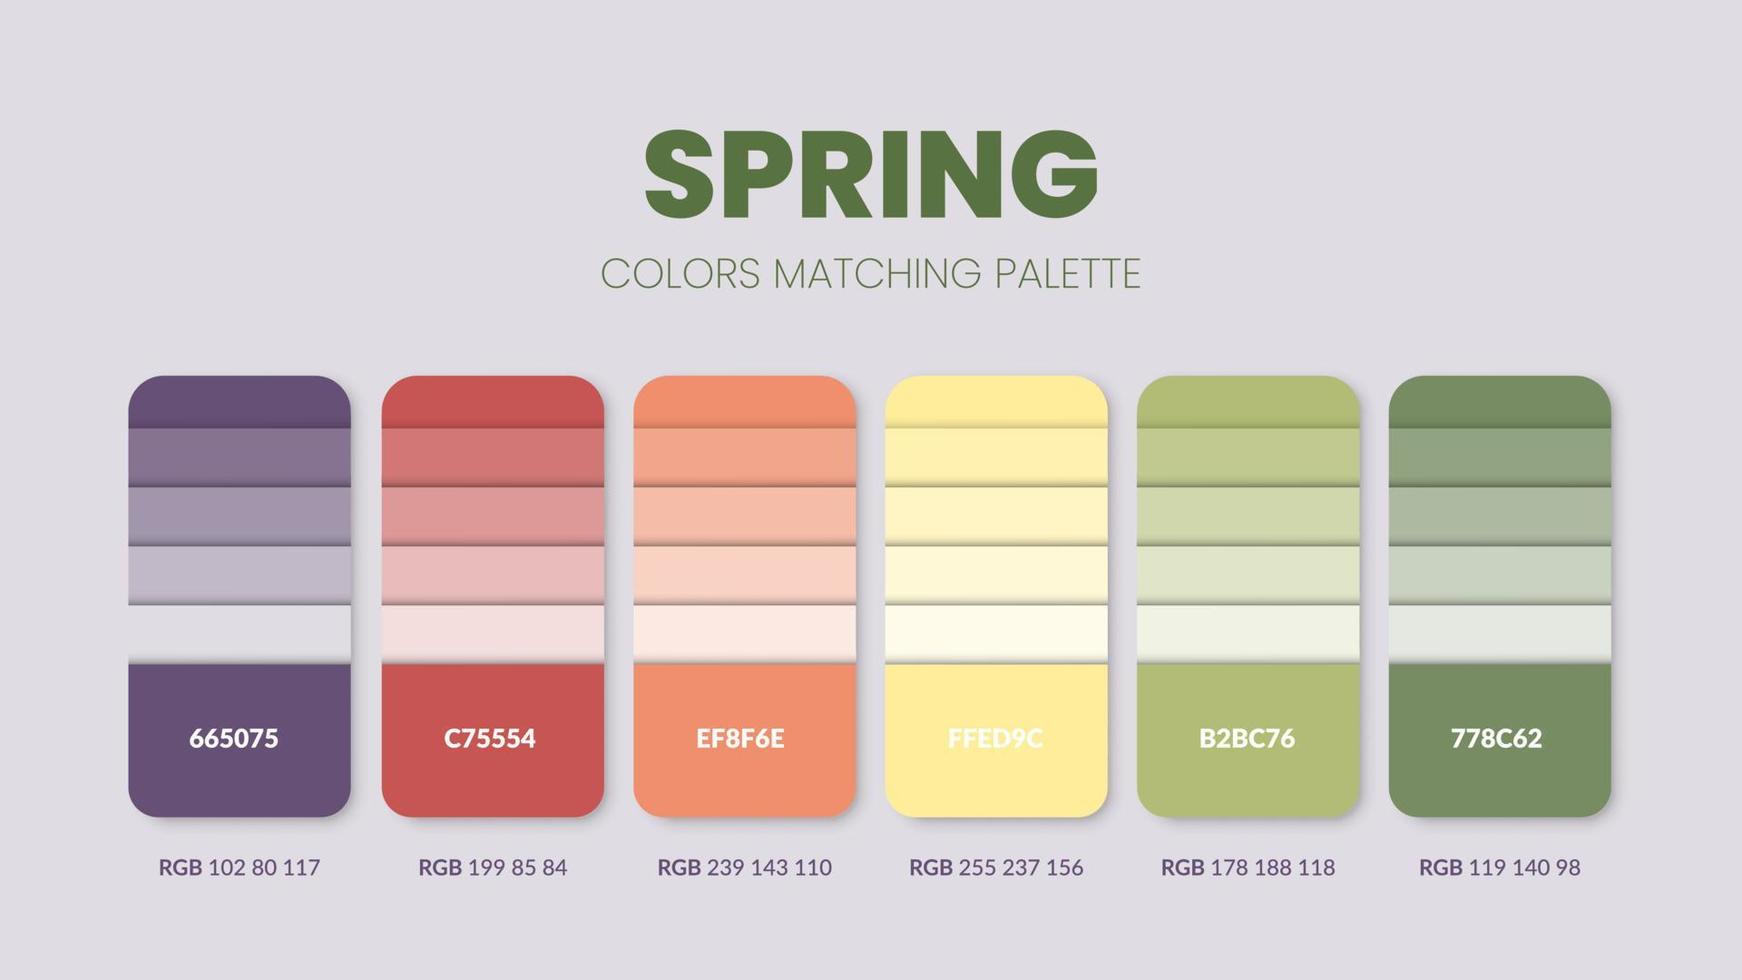 lentekleurenpaletten of kleurenschema's zijn trendcombinaties en paletgidsen dit jaar tafelkleurtinten in rgb of hex. een kleurstaal voor een zachte dag mode, huis of interieur vector